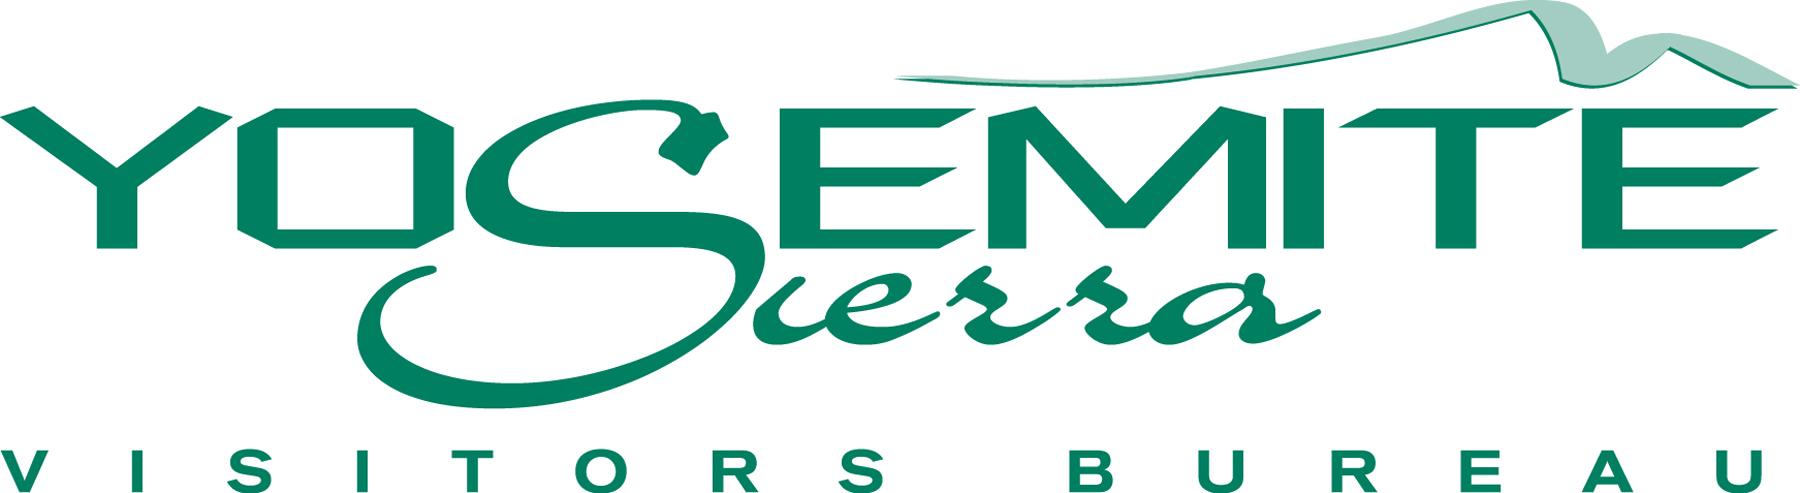 Yosemite Sierra Visitors Bureau Logo